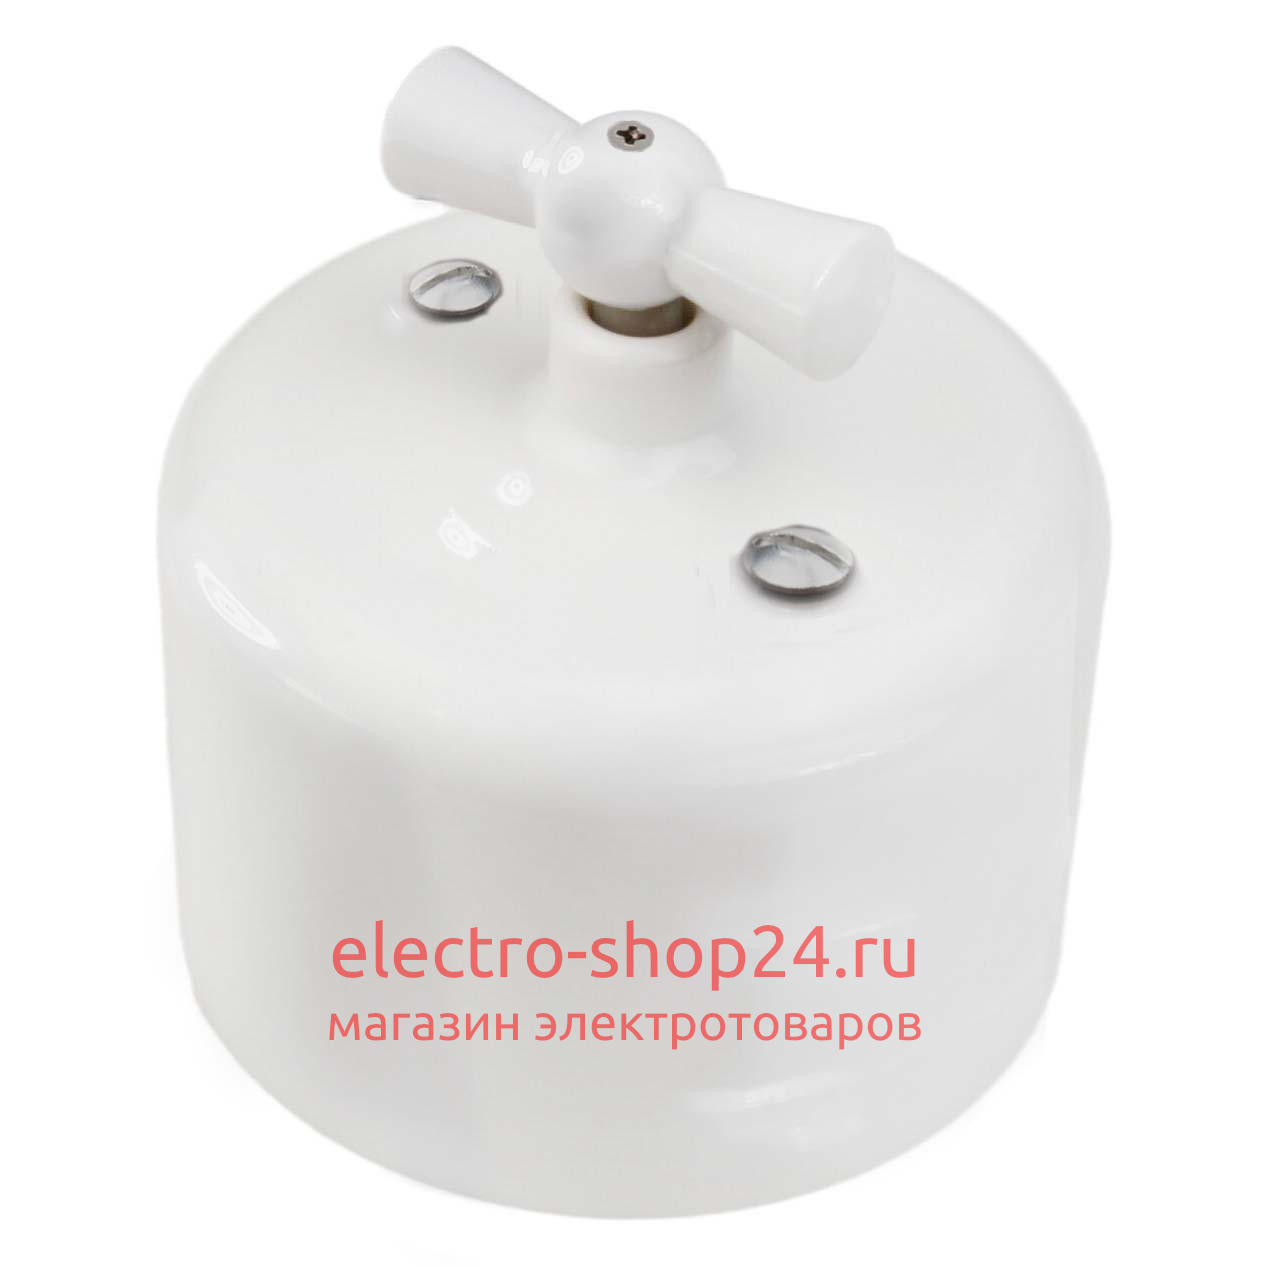 Выключатель 2-клавишный Bironi Ришелье керамика белый R1-212-01 R1-212-01 - магазин электротехники Electroshop